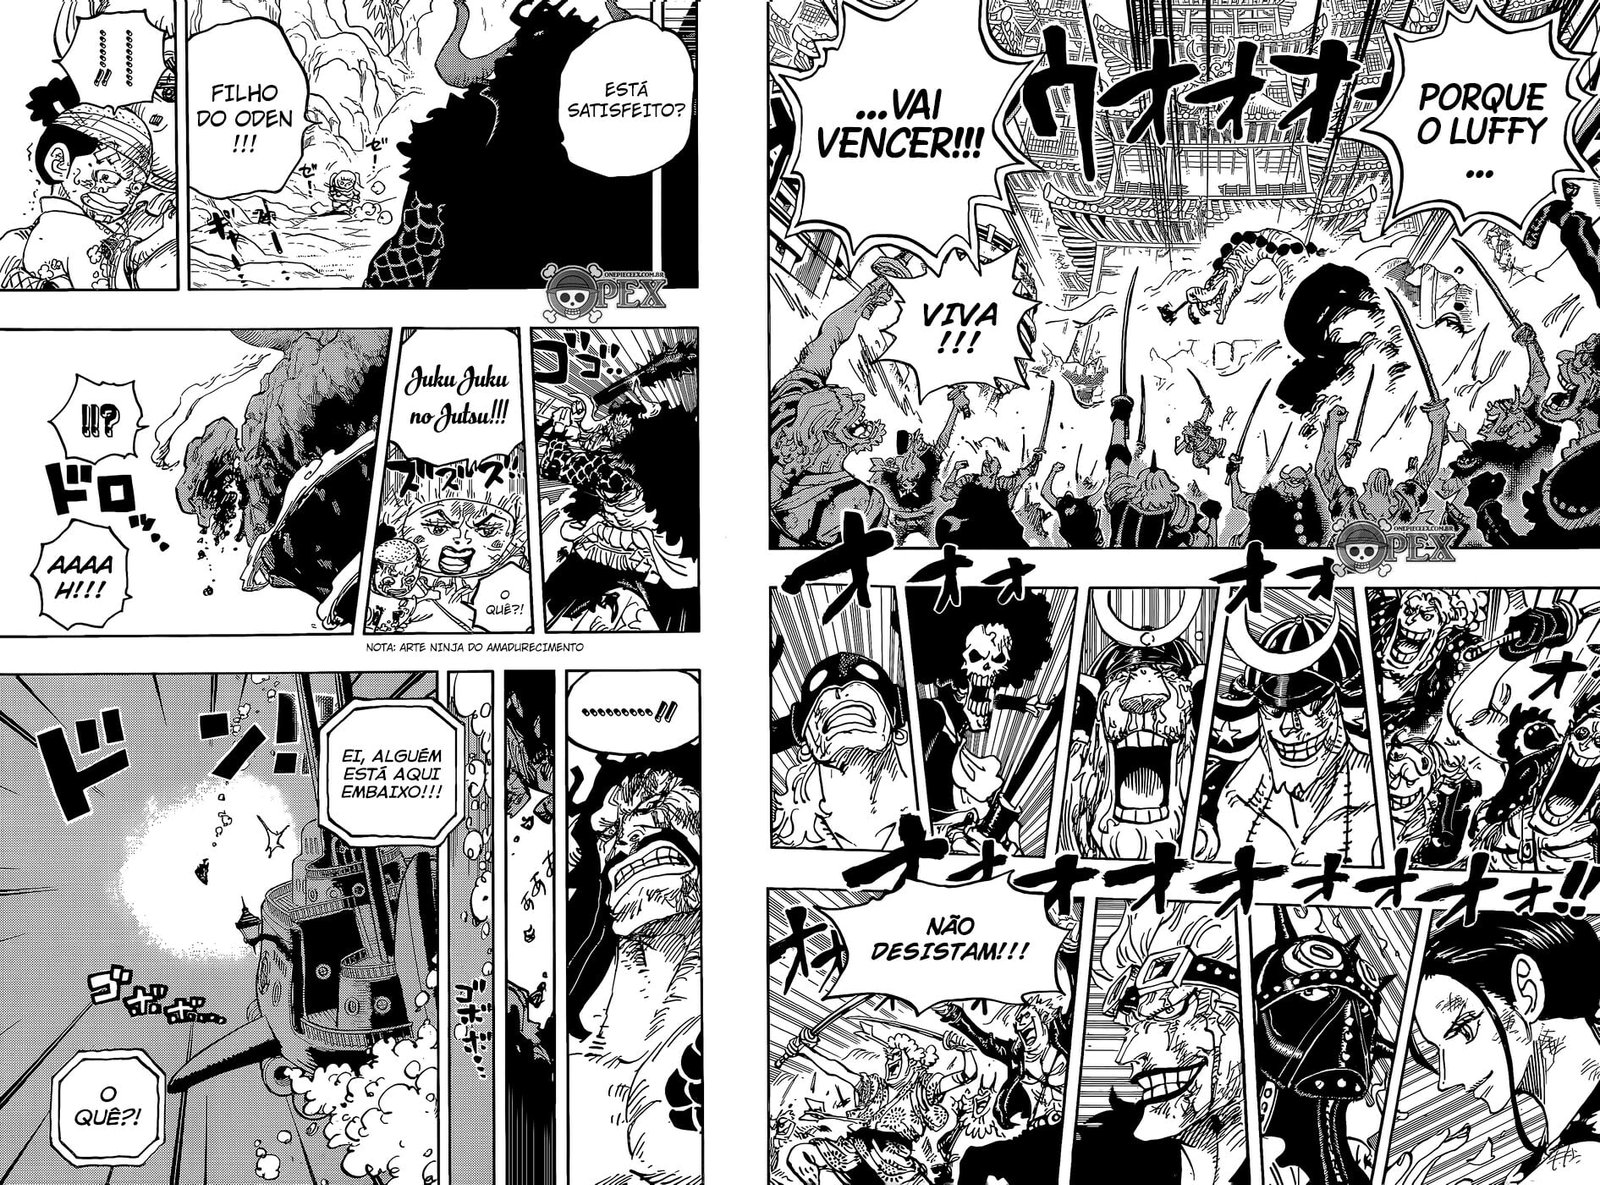 Capitulo 1016 De One Piece Data De Lancamento E Spoilers